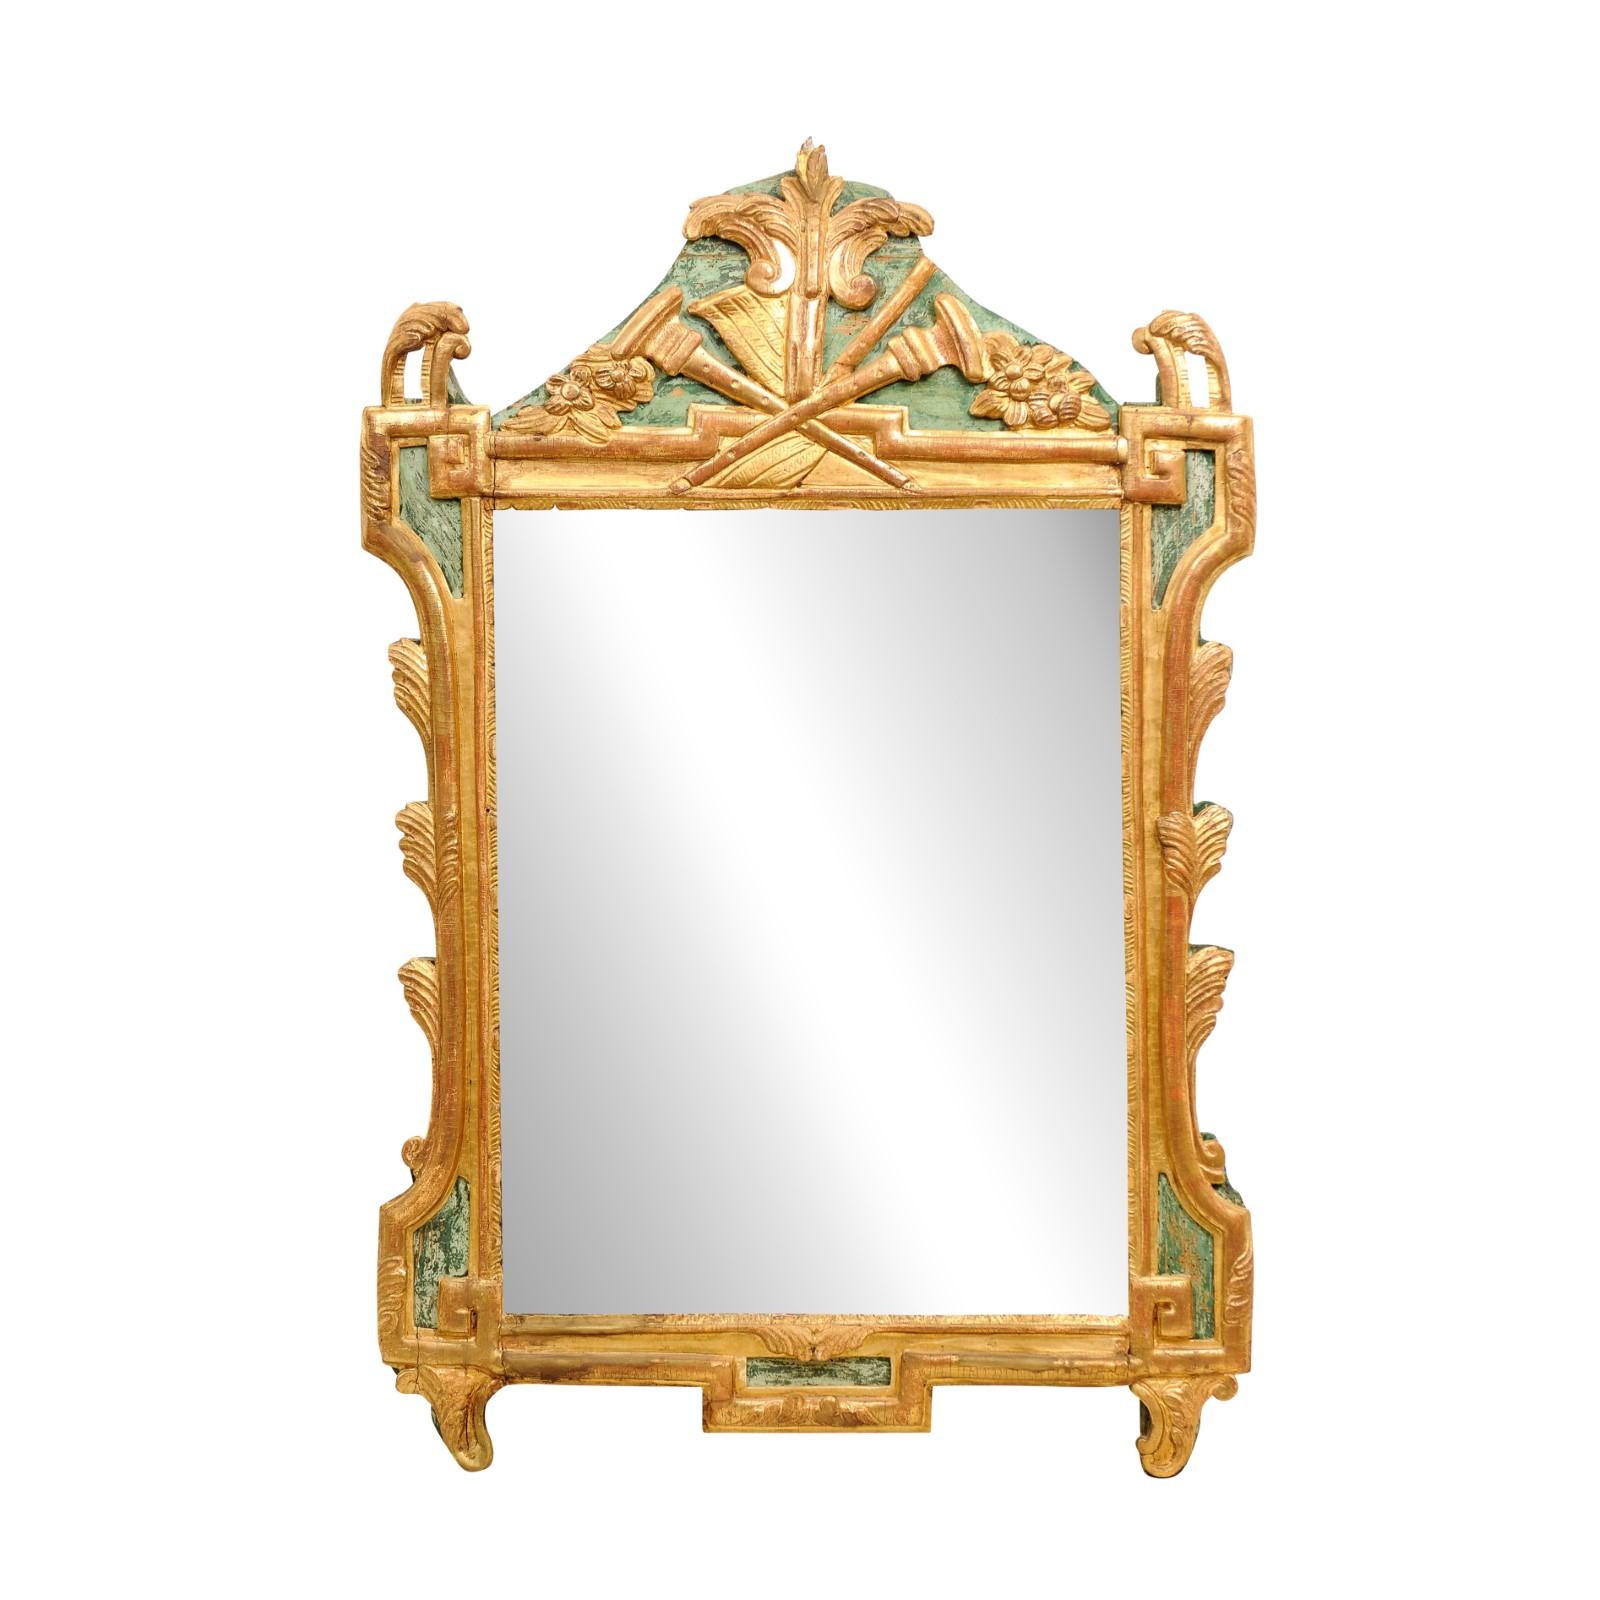 Miroir en bois peint et doré d'époque Louis XVI (XVIIIe siècle), sculpté d'une allégorie des arts libéraux symbolisée par des instruments de musique et des partitions. Ce miroir d'époque Louis XVI français du XVIIIe siècle est un splendide artefact